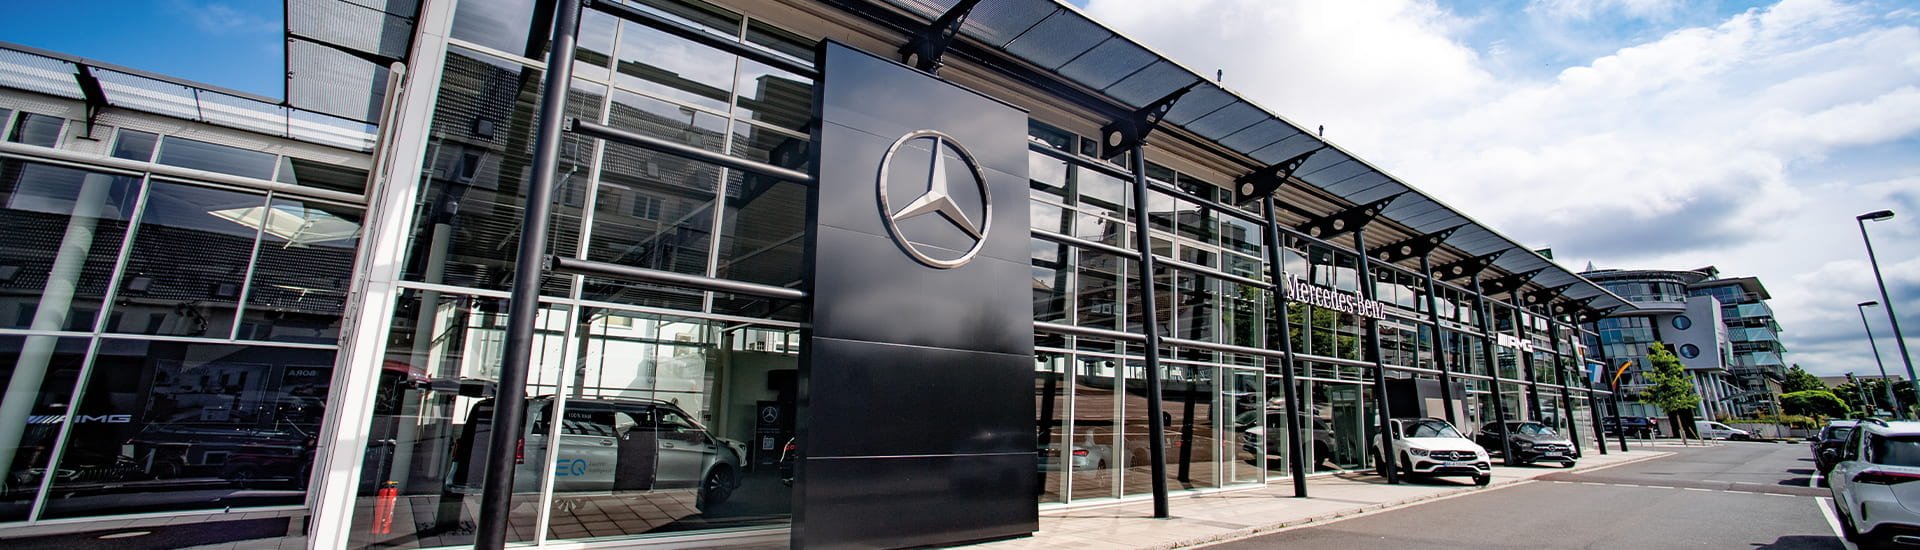 Wartung und Inspektion für Mercedes-Benz Pkw in Aschaffenburg